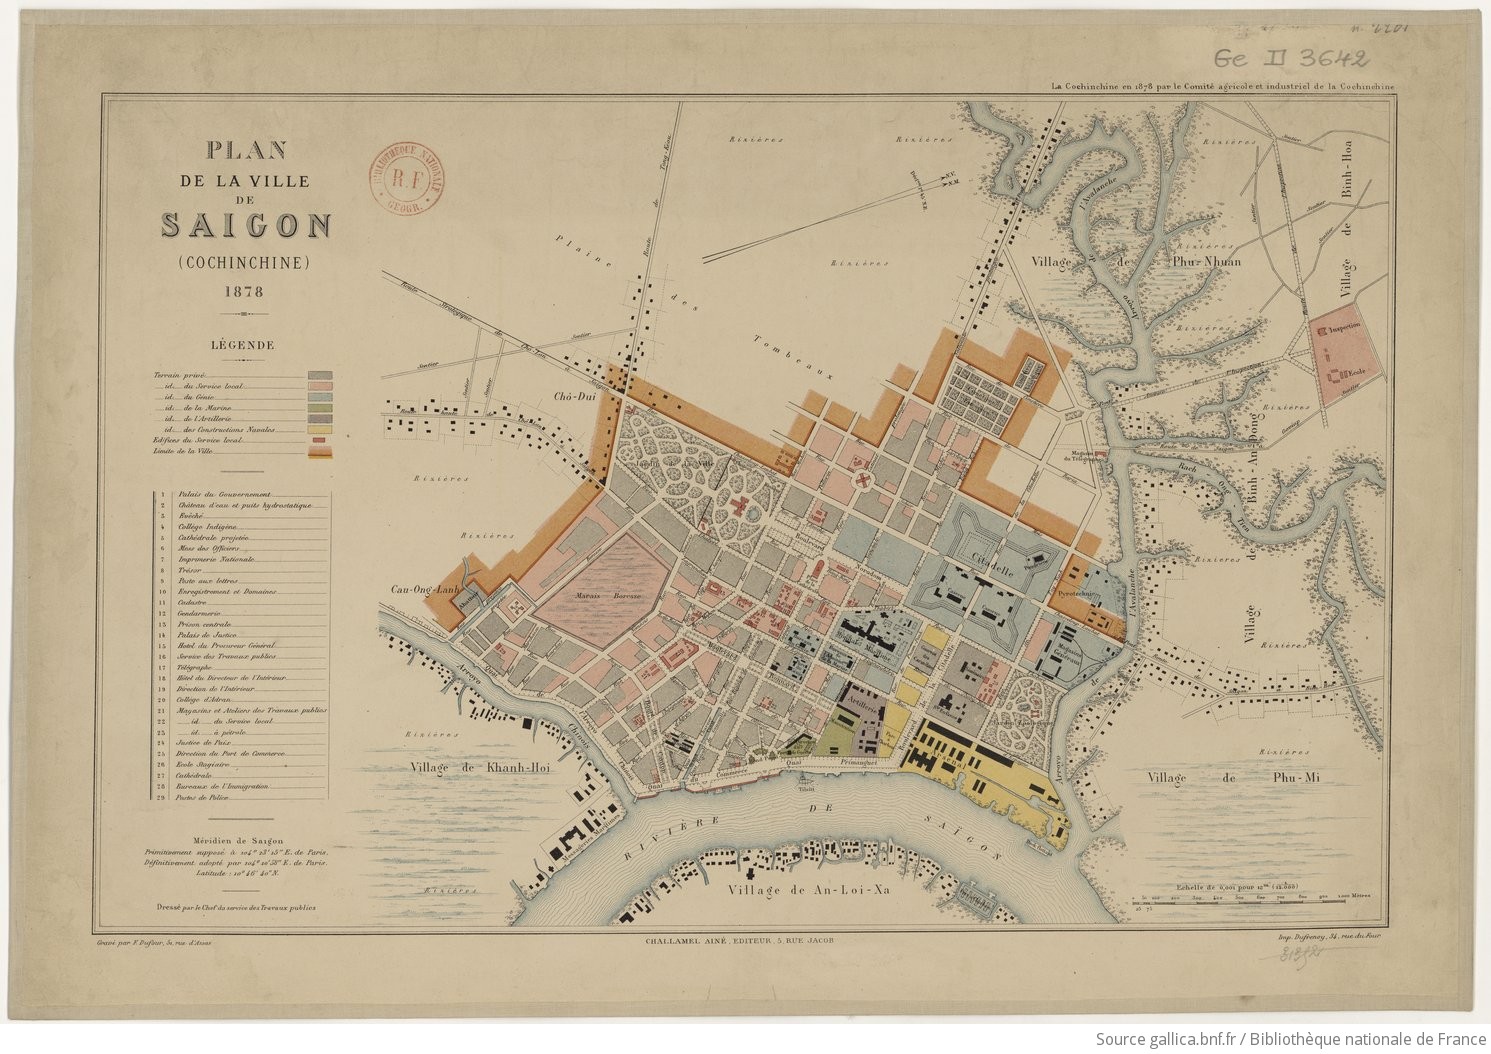 Plan de la ville de Saigon (Cochinchine) - 1